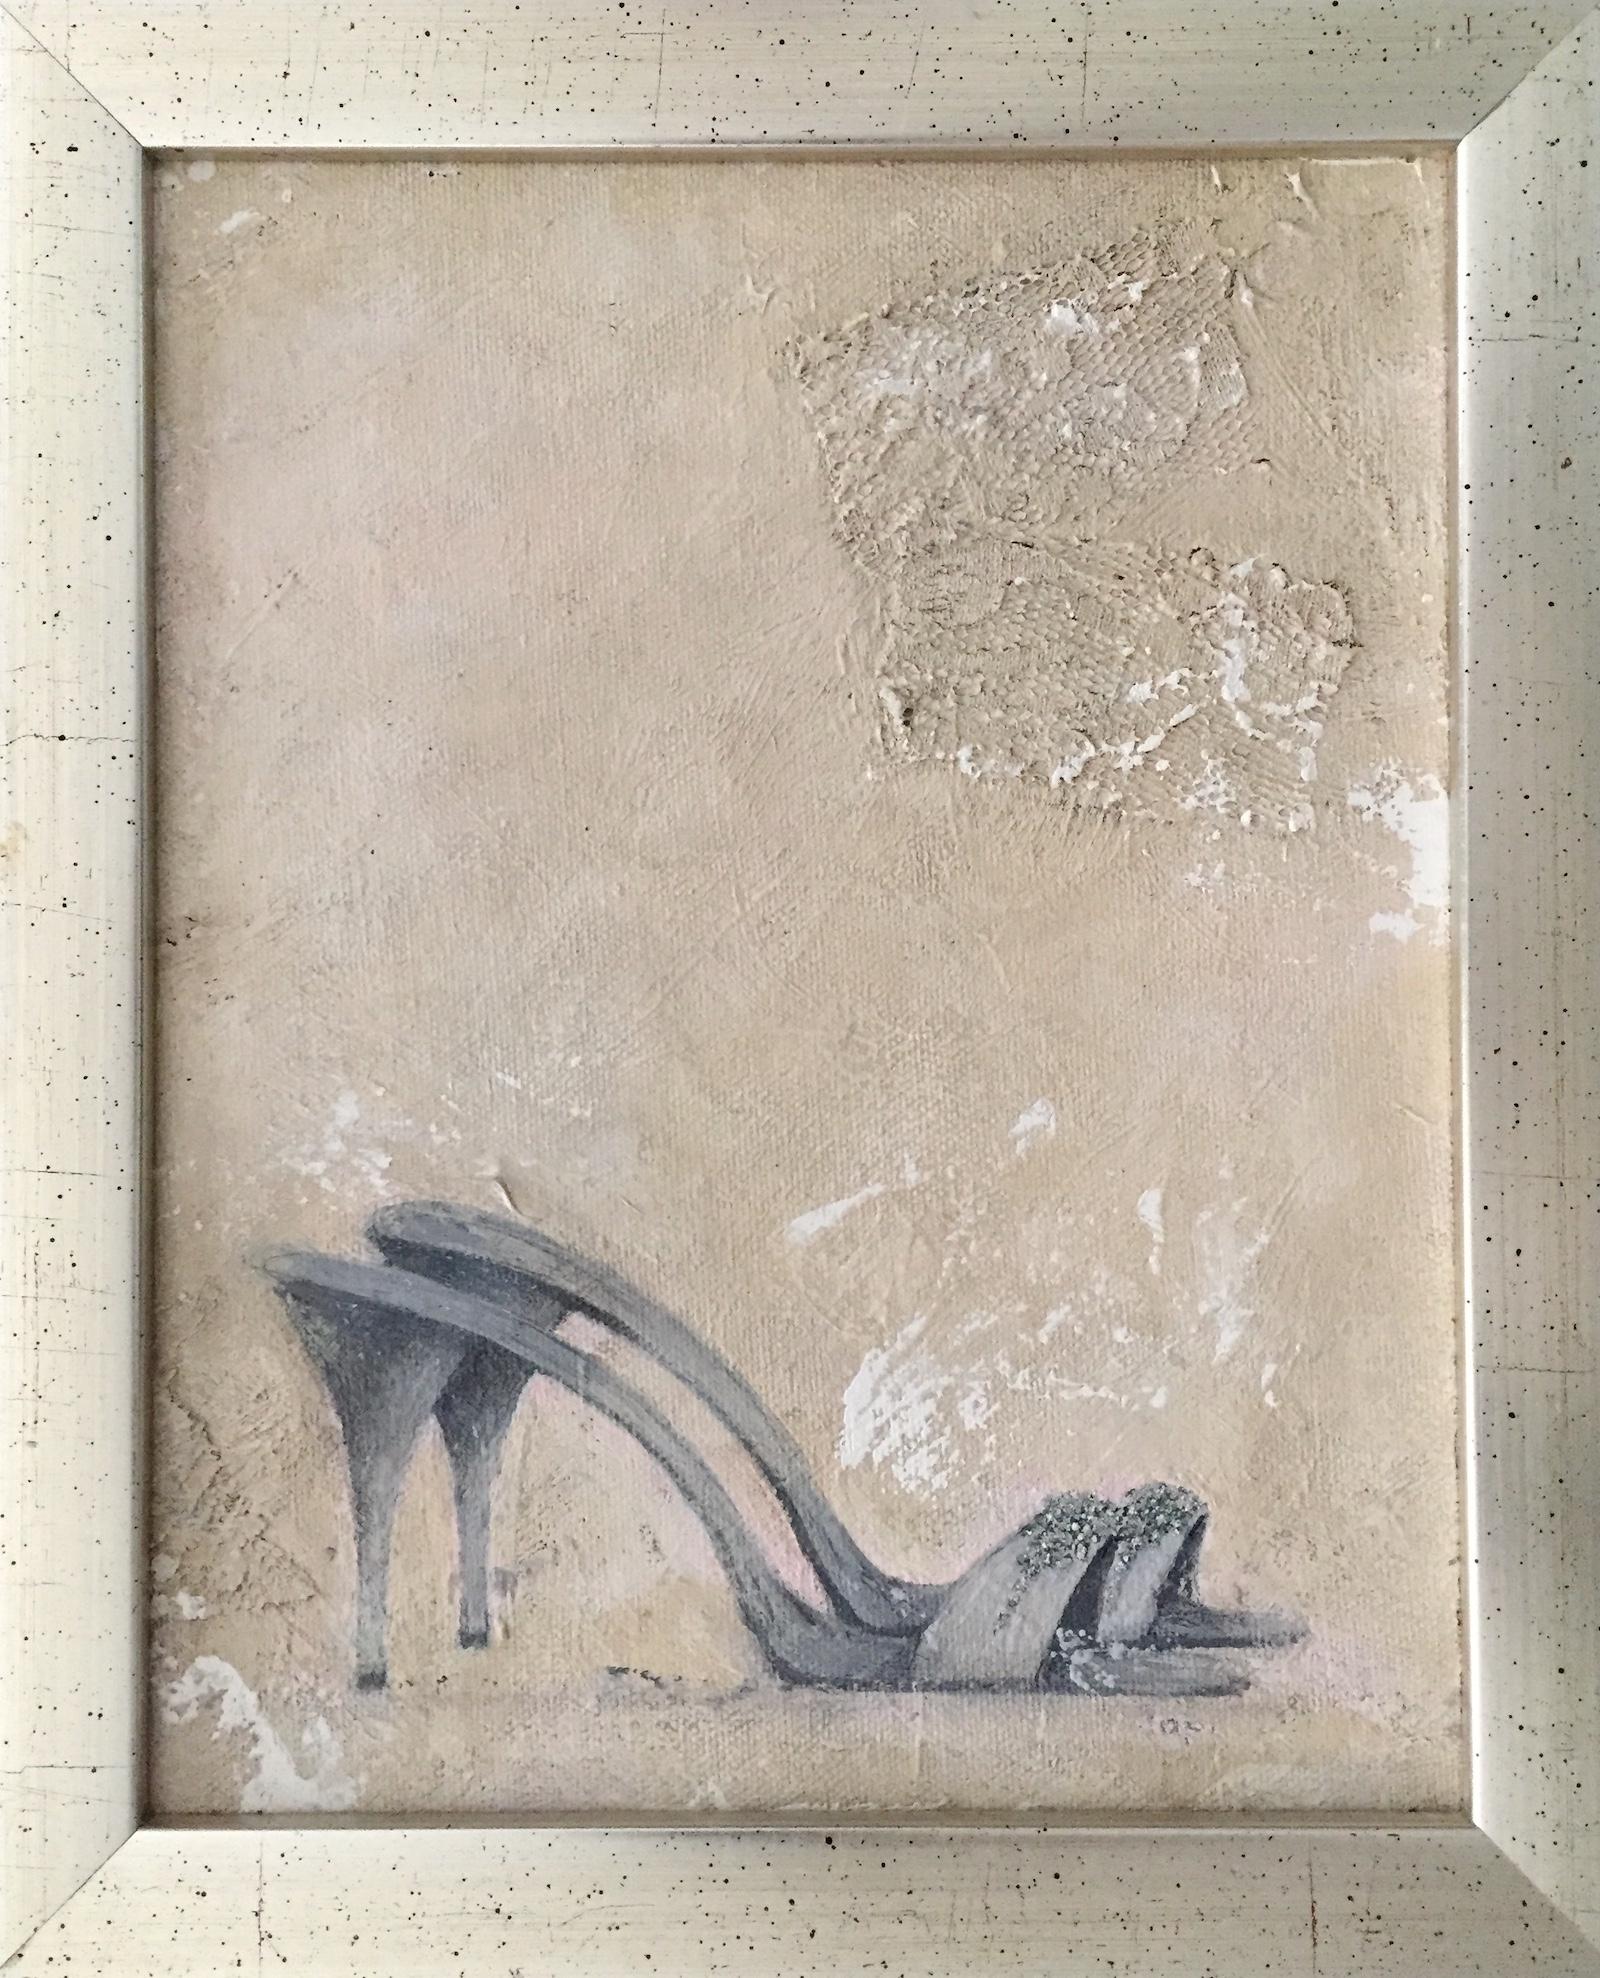  Chaussures de soirée (11,4"" x 9,4"" - Peinture encadrée, rose, grise, neutre)